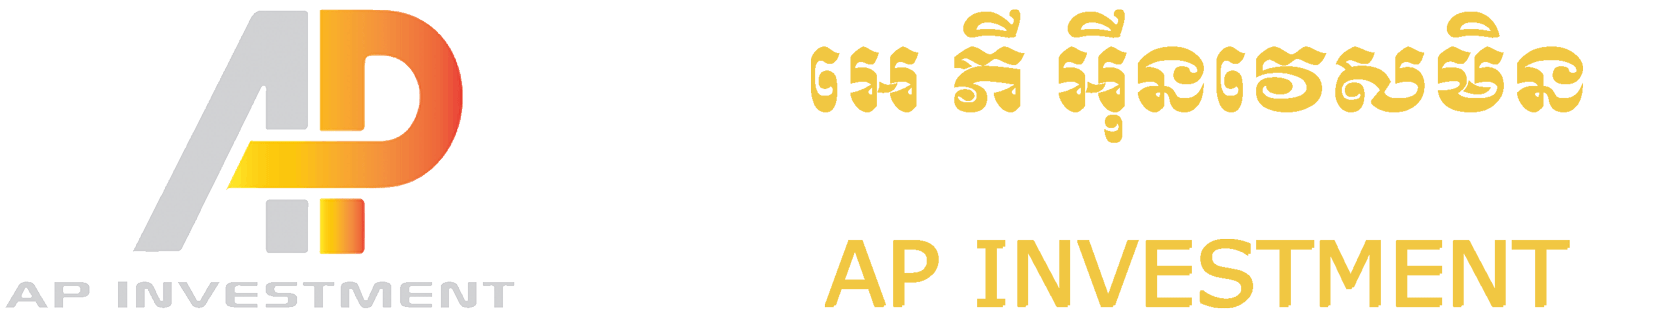 AP-Investment